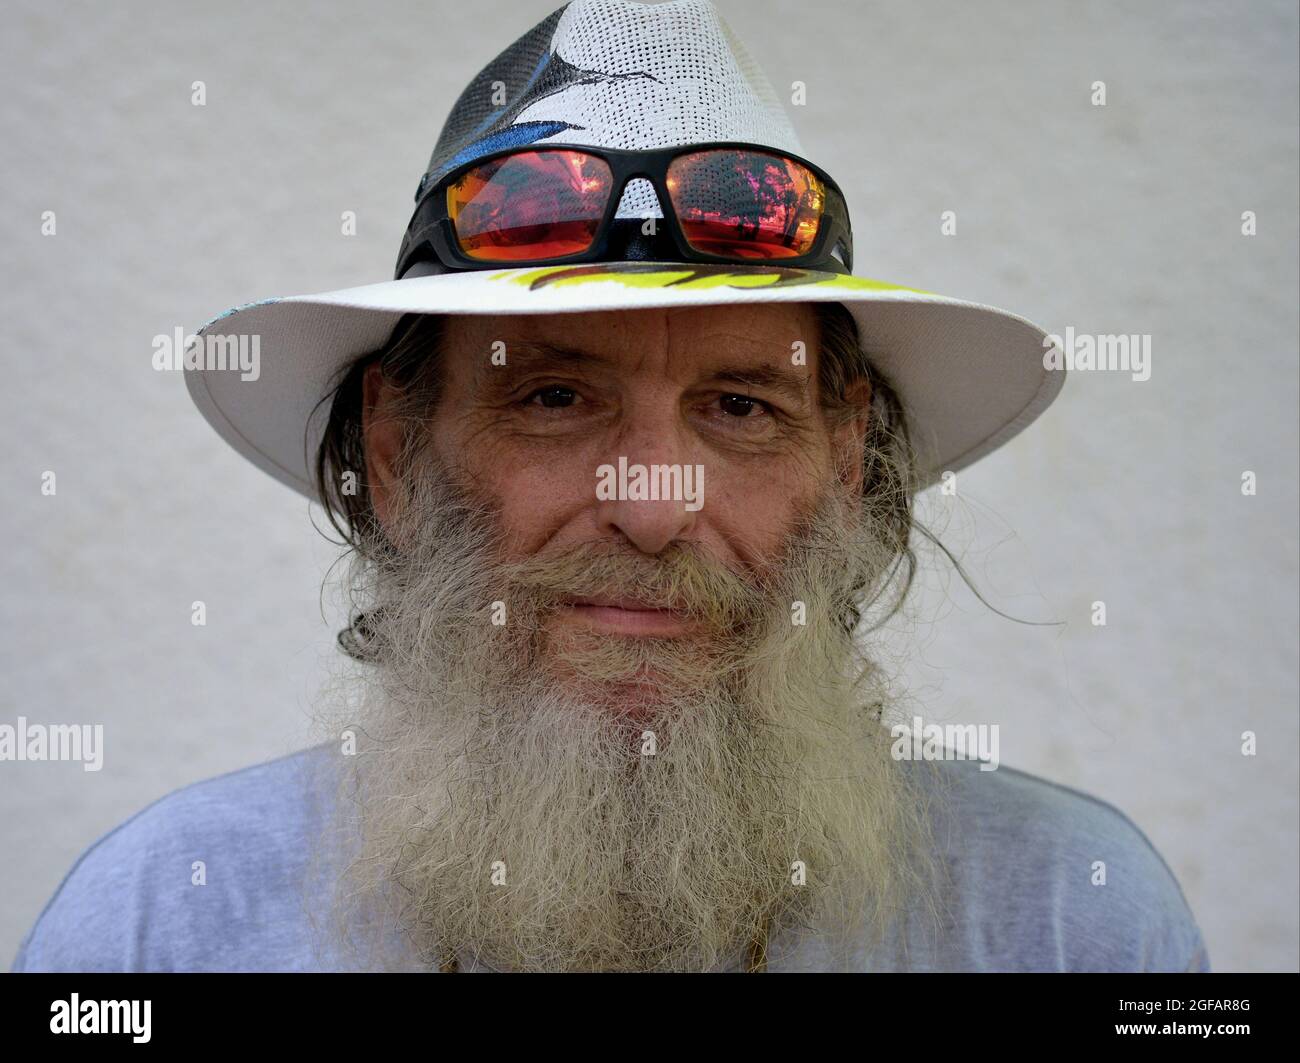 Barbu optimiste homme âgé caucasien grins et porte un chapeau de Panama peint avec des lunettes de soleil colorées sur le bord de son chapeau, fond blanc. Banque D'Images